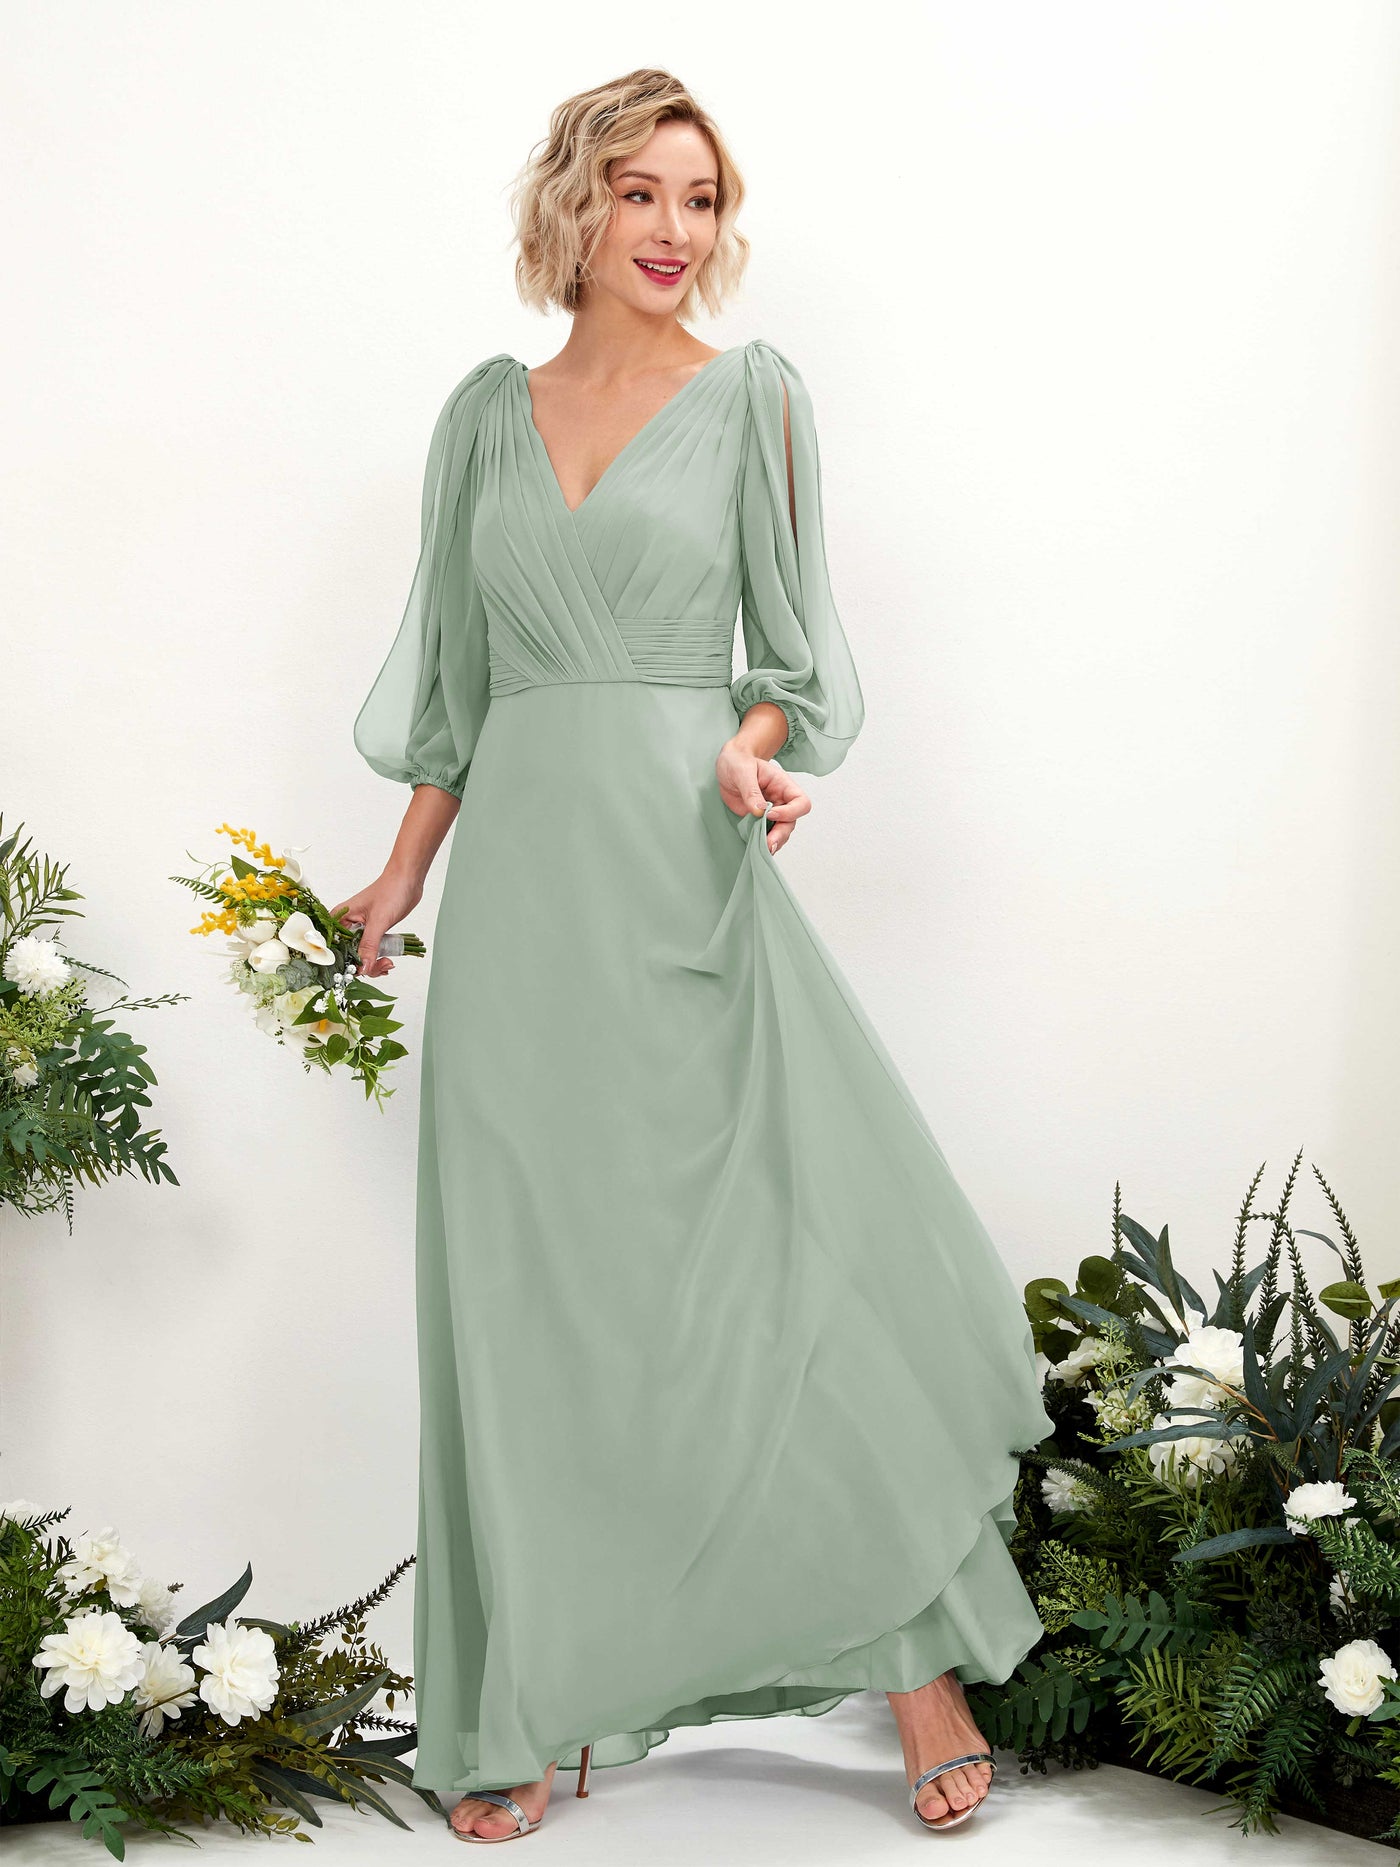 Sage Green Bridesmaid Dresses Bridesmaid Dress Chiffon V-neck Full Length Long Sleeves Wedding Party Dress (81223505)#color_sage-green